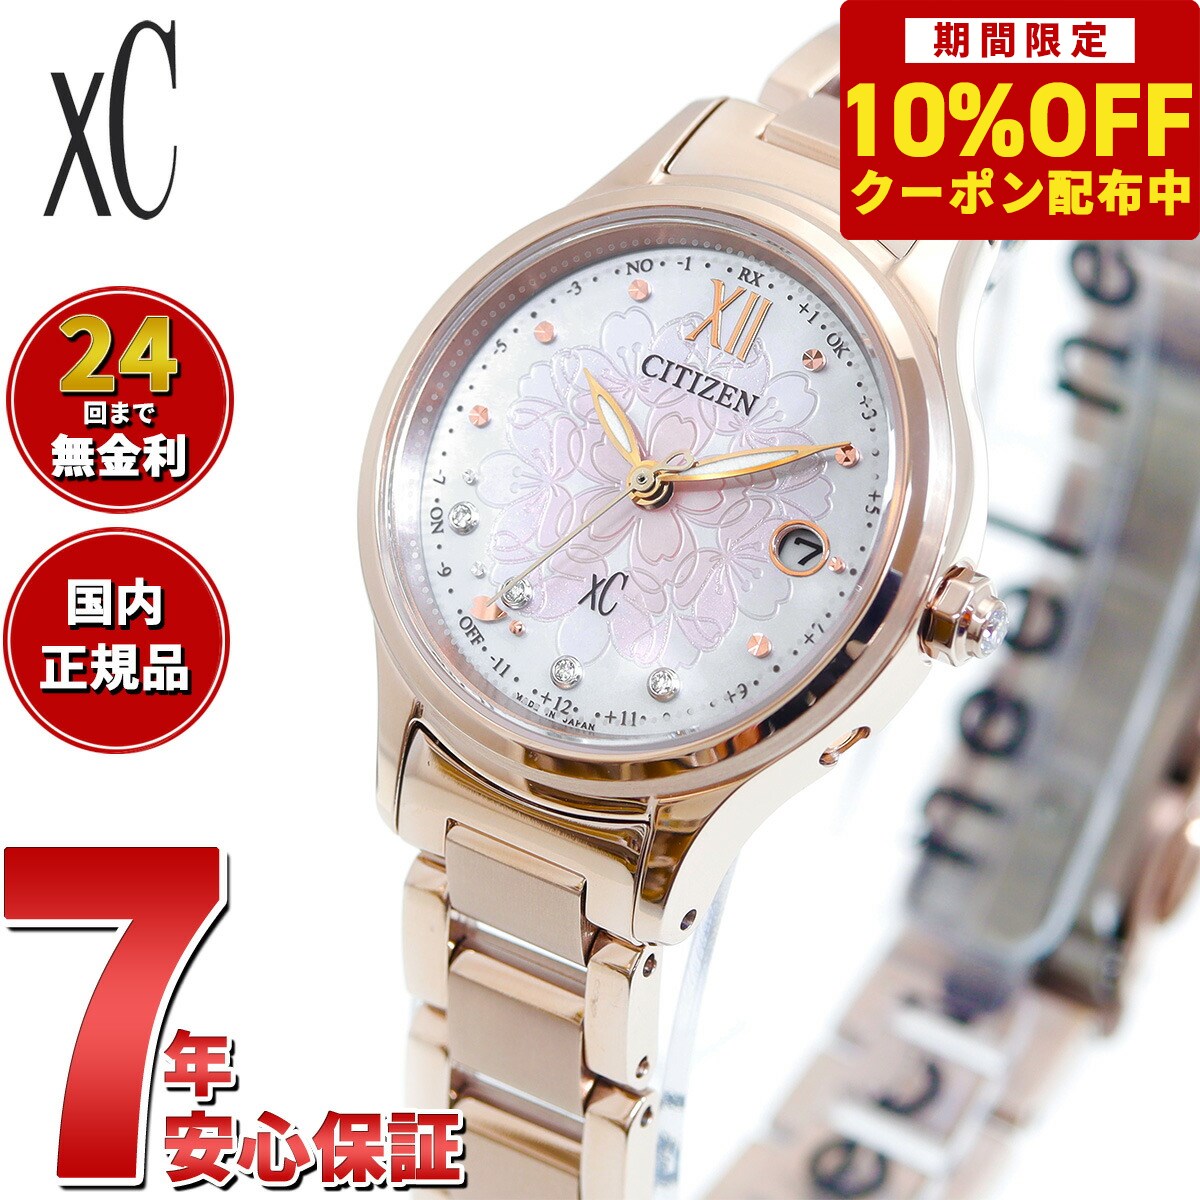 シチズン クロスシー エコドライブ 電波時計 xC SAKURA限定モデル ES9497-88X ティタニア ハッピーフライト レディース 腕時計 CITIZEN hikari collection